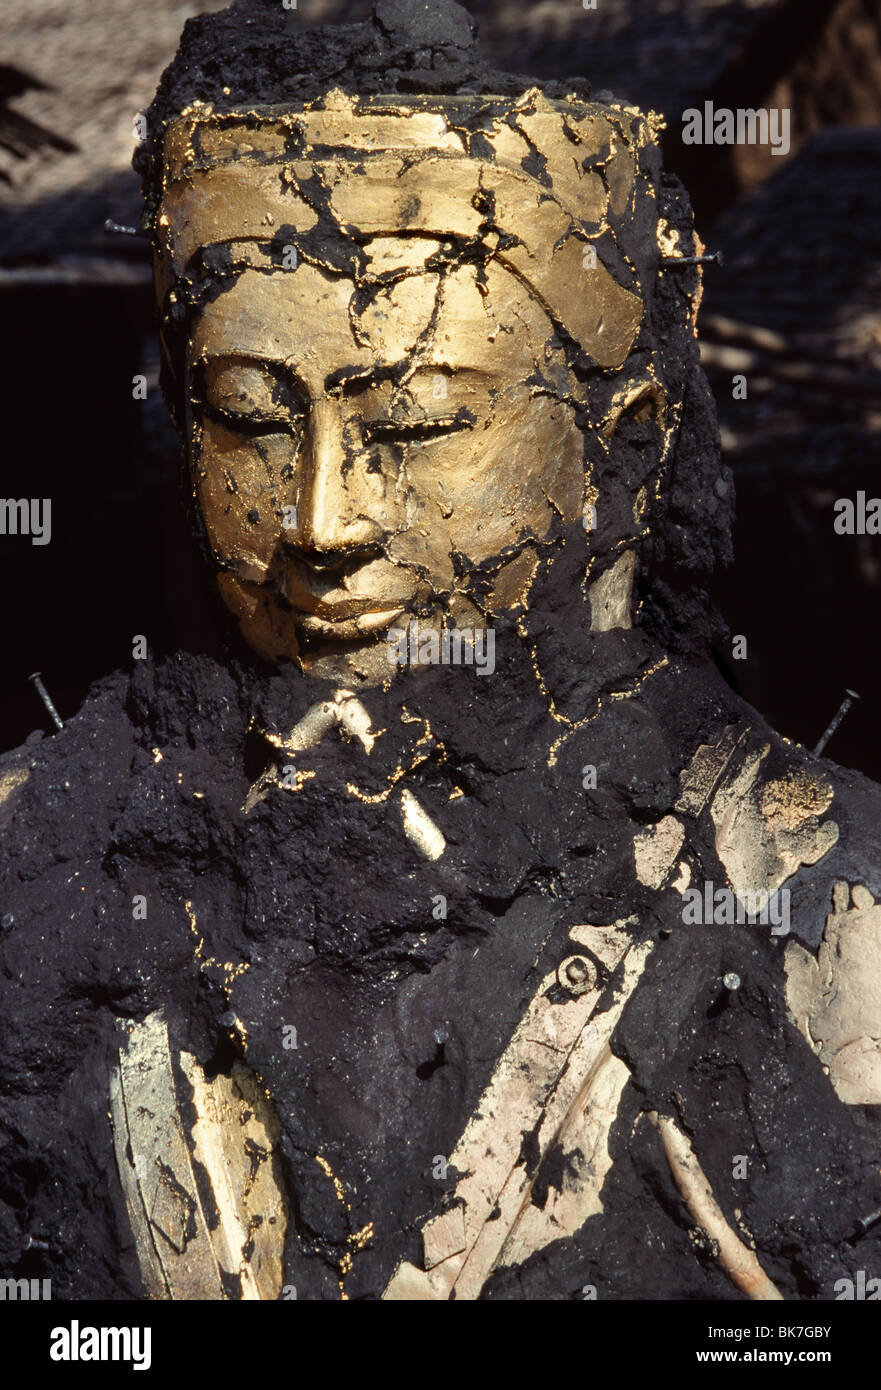 Le visage de bouddha émergeant de la cendre, fonte du bronze, Mandalay, Myanmar (Birmanie), l'Asie Banque D'Images